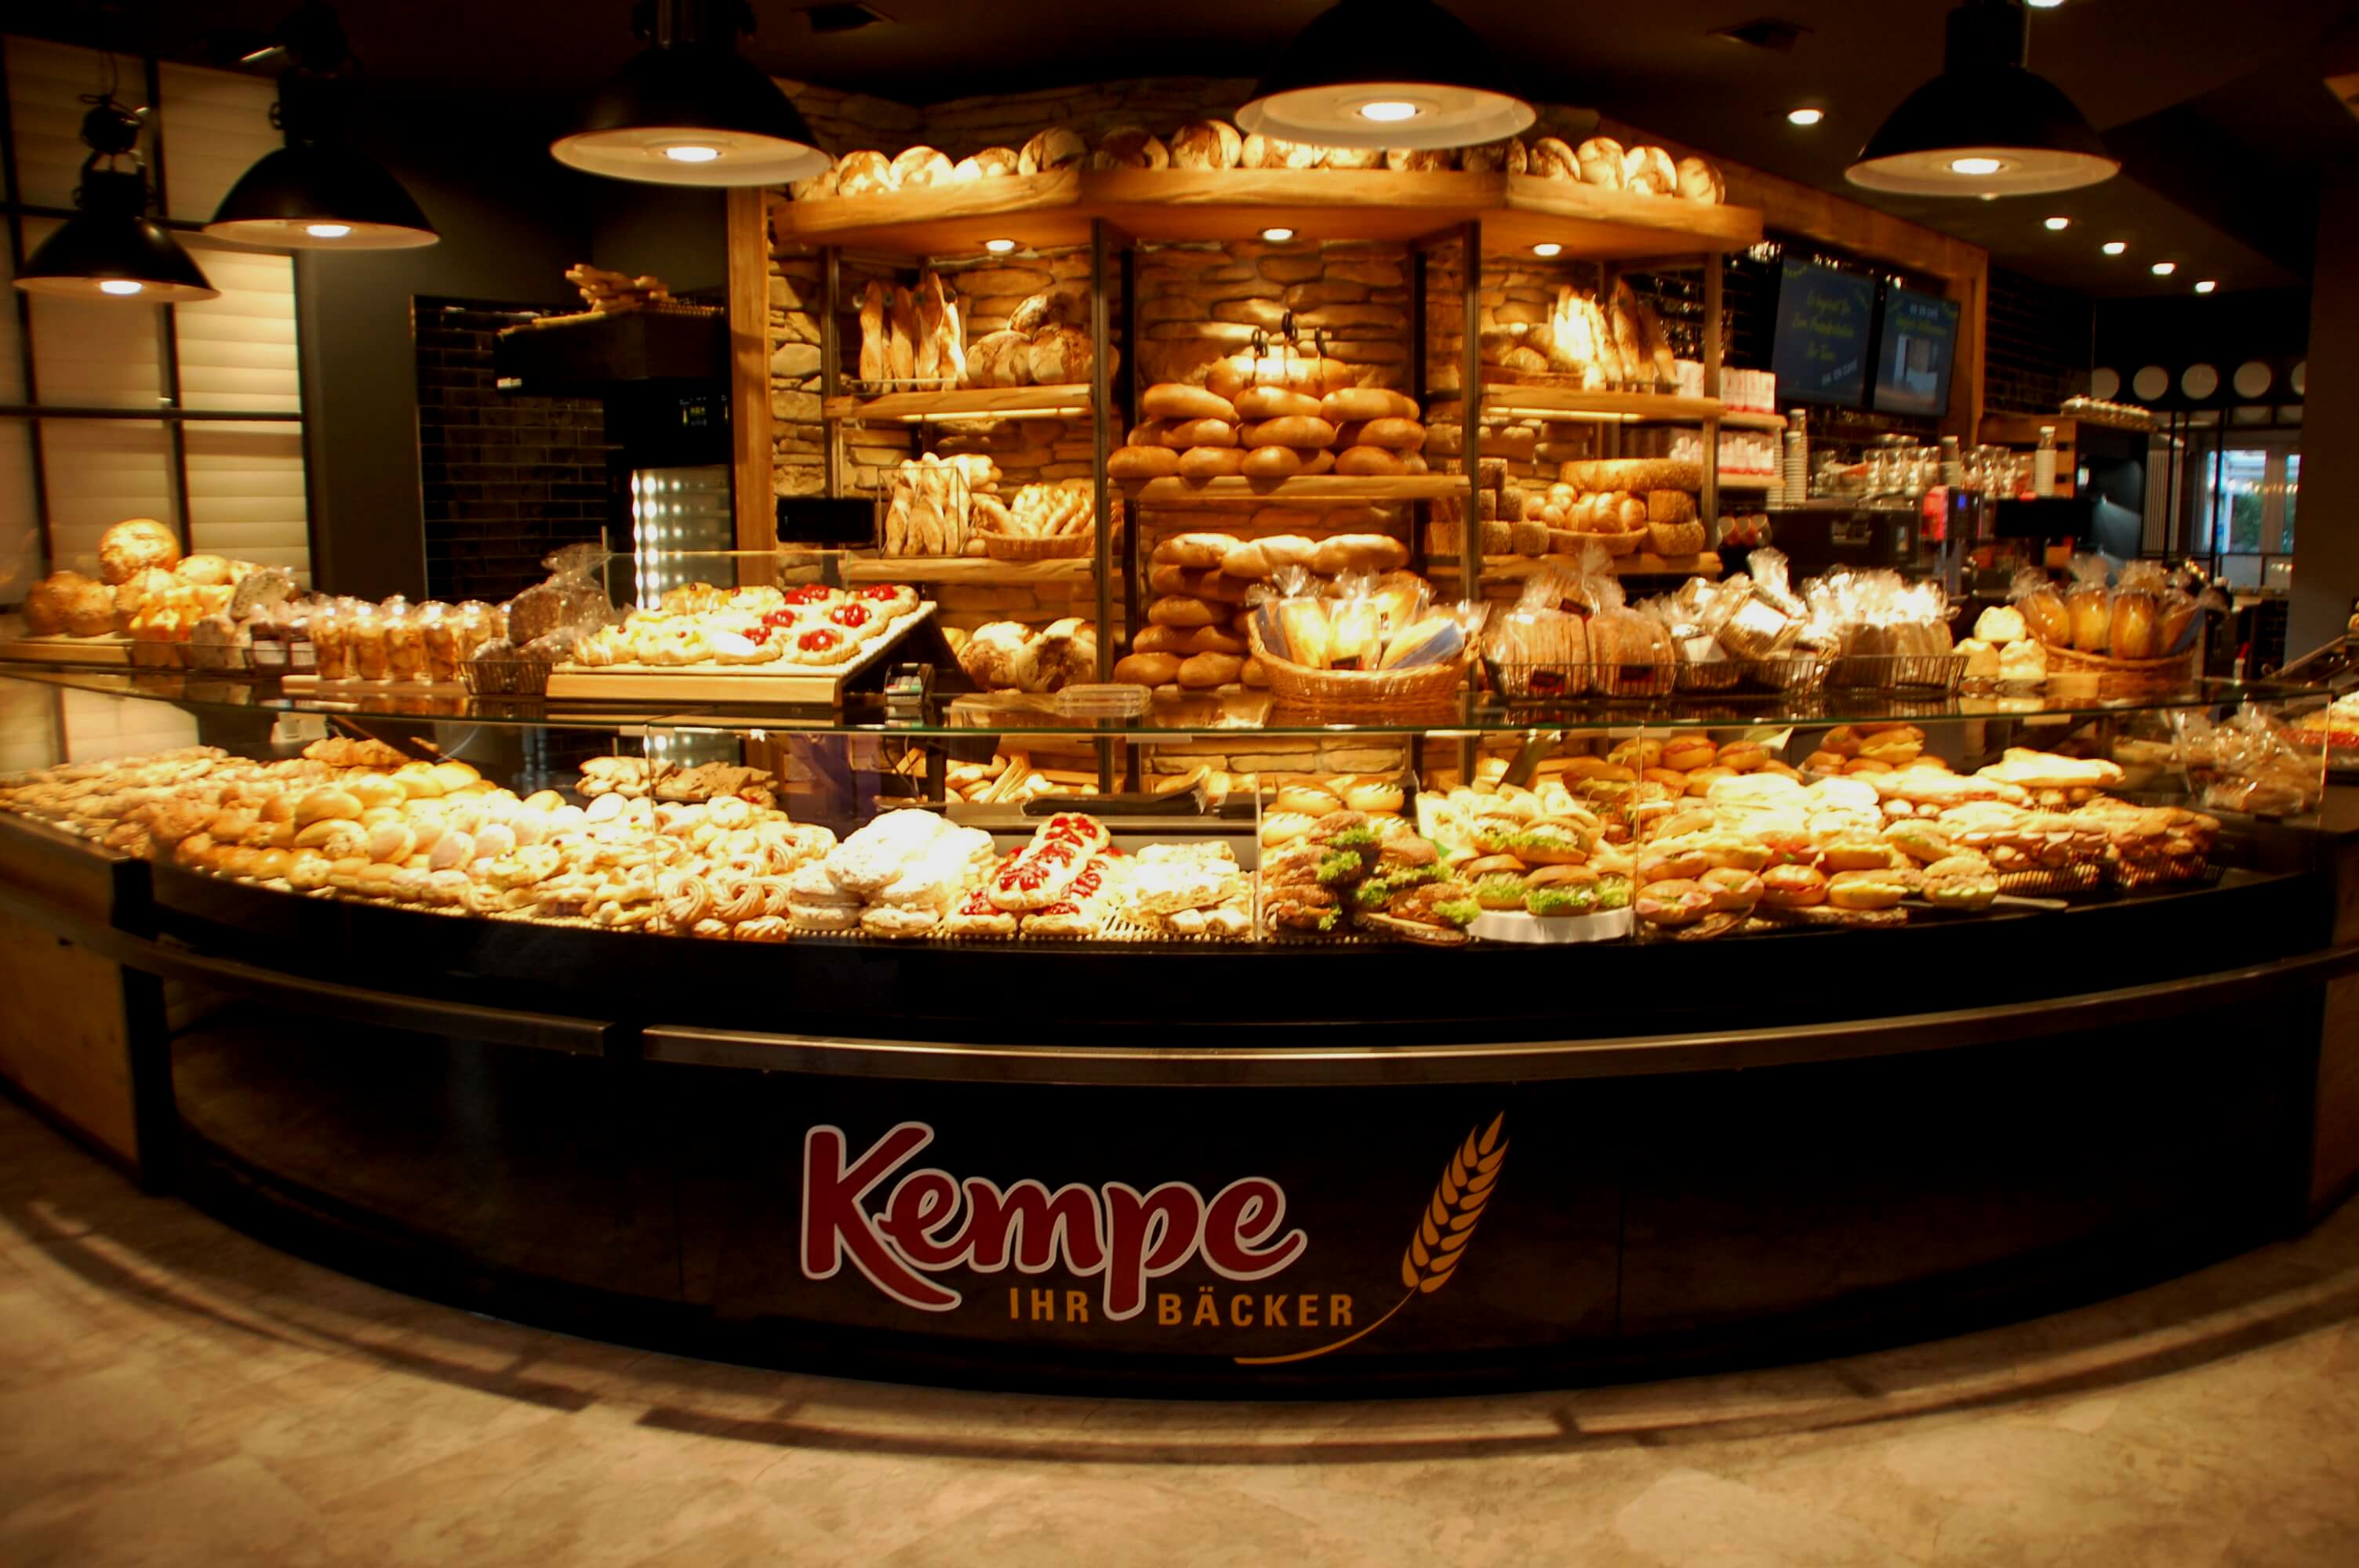 Bäckerei Kempe - Haven Café